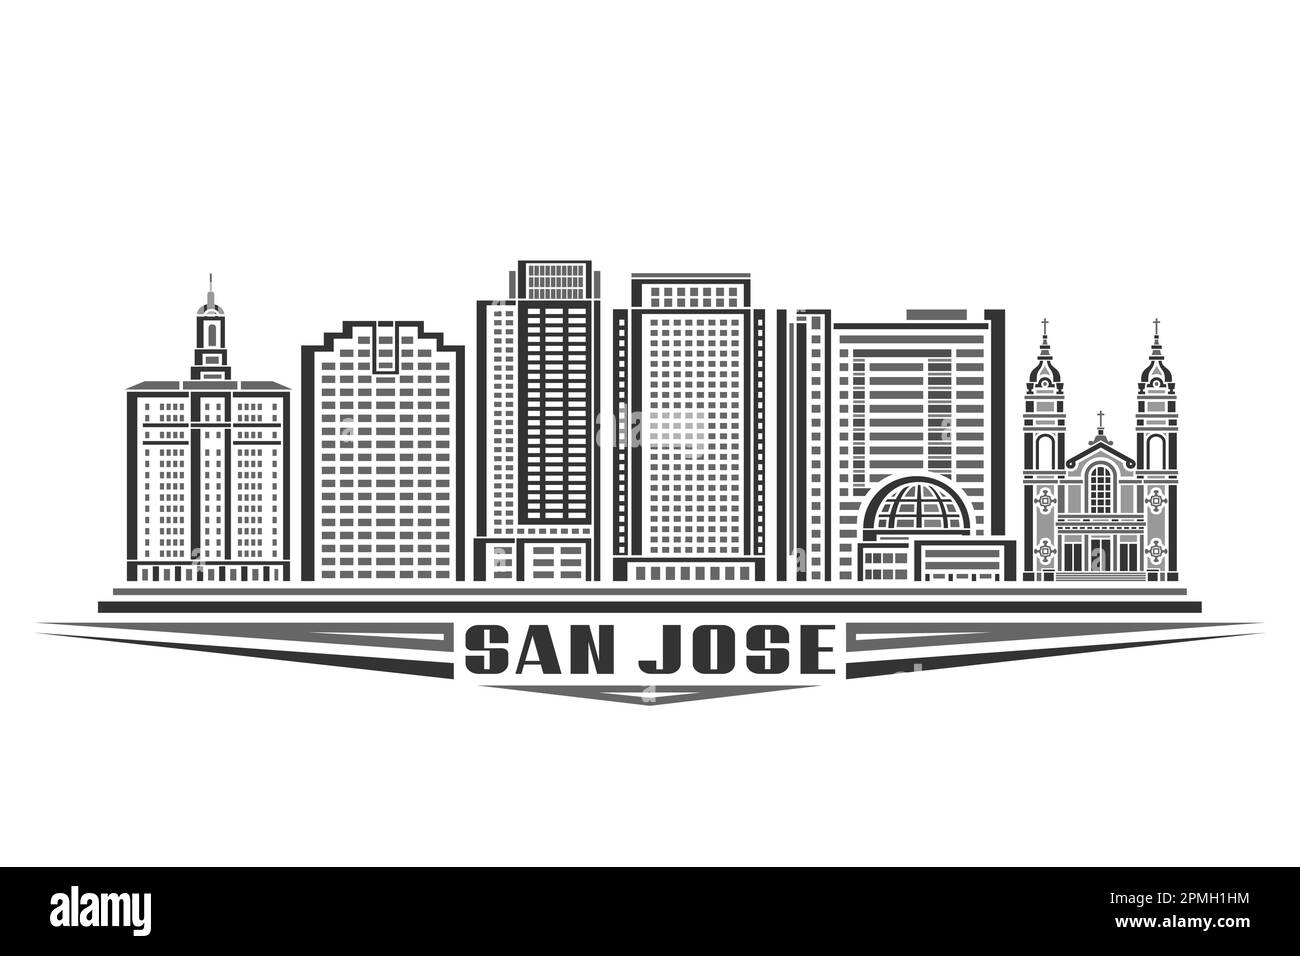 Illustration vectorielle de San Jose, carte monochrome avec design linéaire célèbre paysage de ville californienne, concept d'art urbain américain avec décoration Illustration de Vecteur